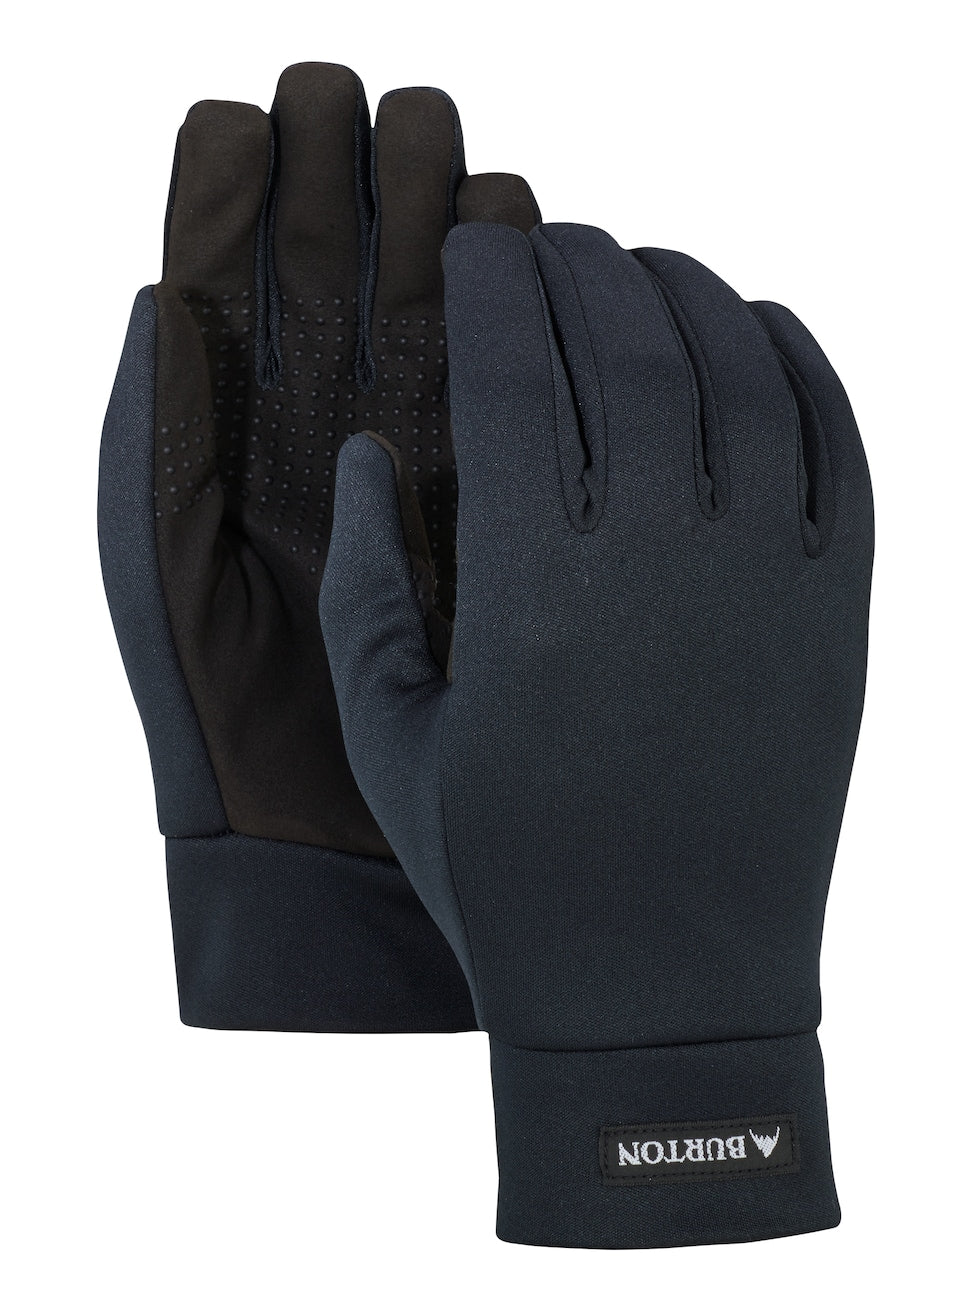 Men's Burton Touch N Go Glove Liner True Black XS Snow Gloves